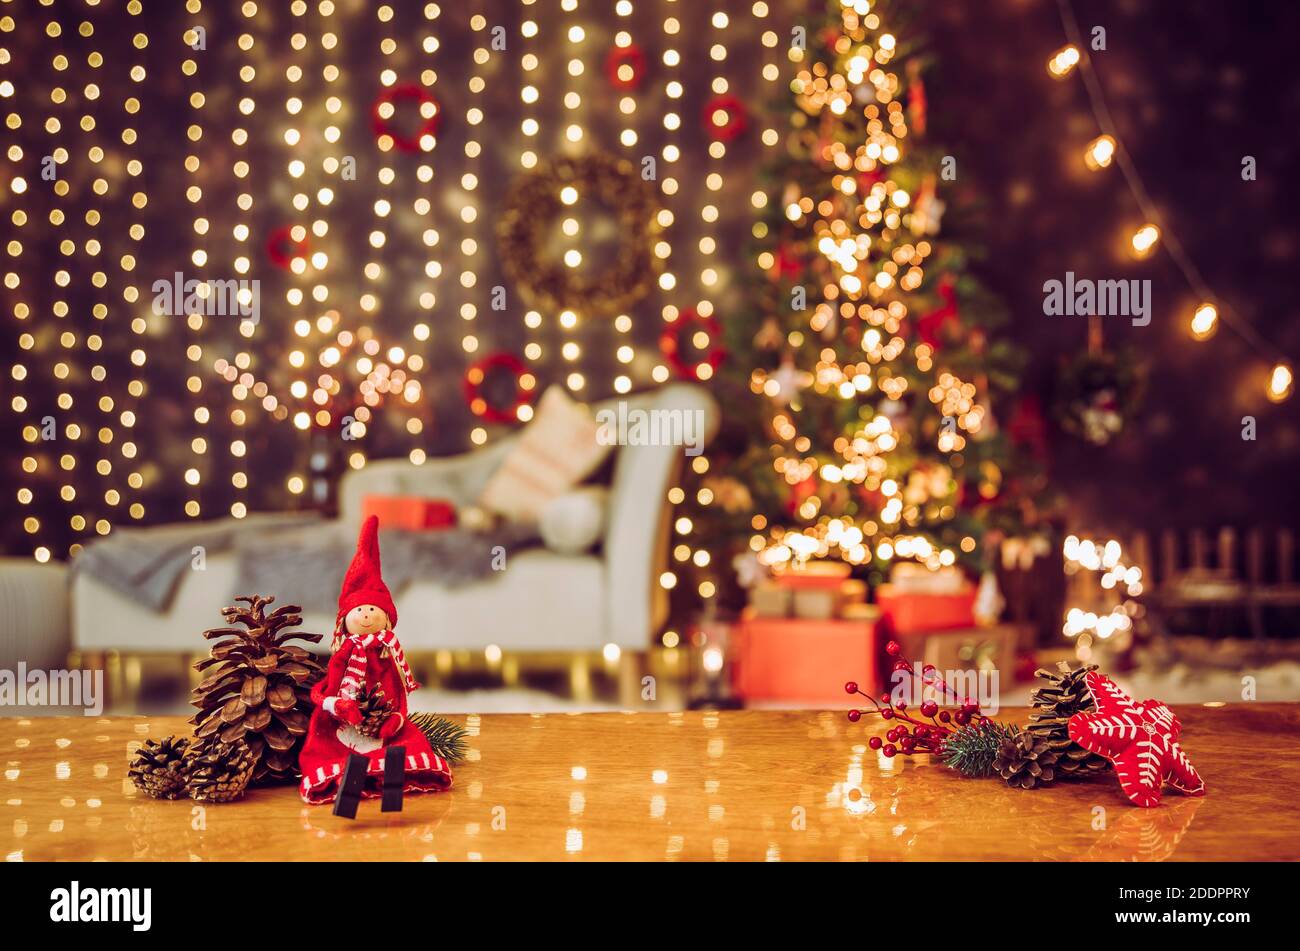 Weihnachten-Fee Puppe mit roten Lichterketten und einen Zauberstab auf  einen Weihnachtsbaum Stockfotografie - Alamy